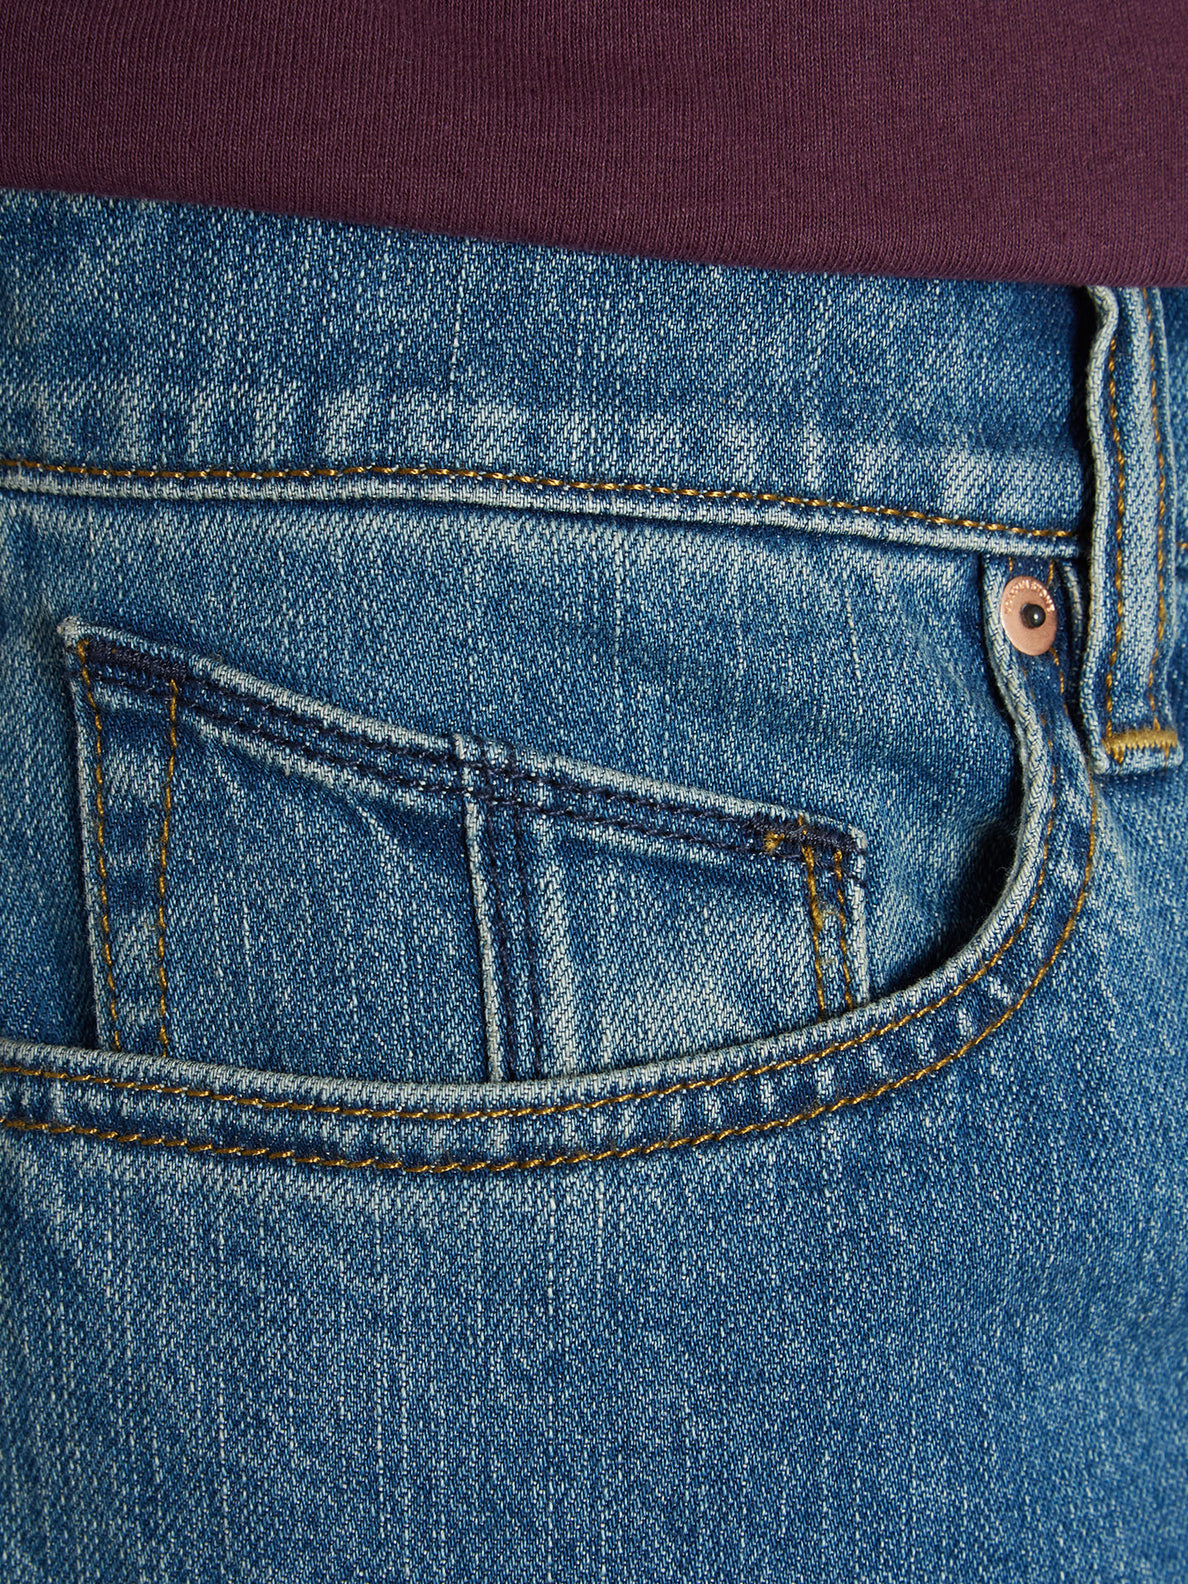 Solver Jeans - AGED INDIGO (A1912303_AIN) [5 - Copia]